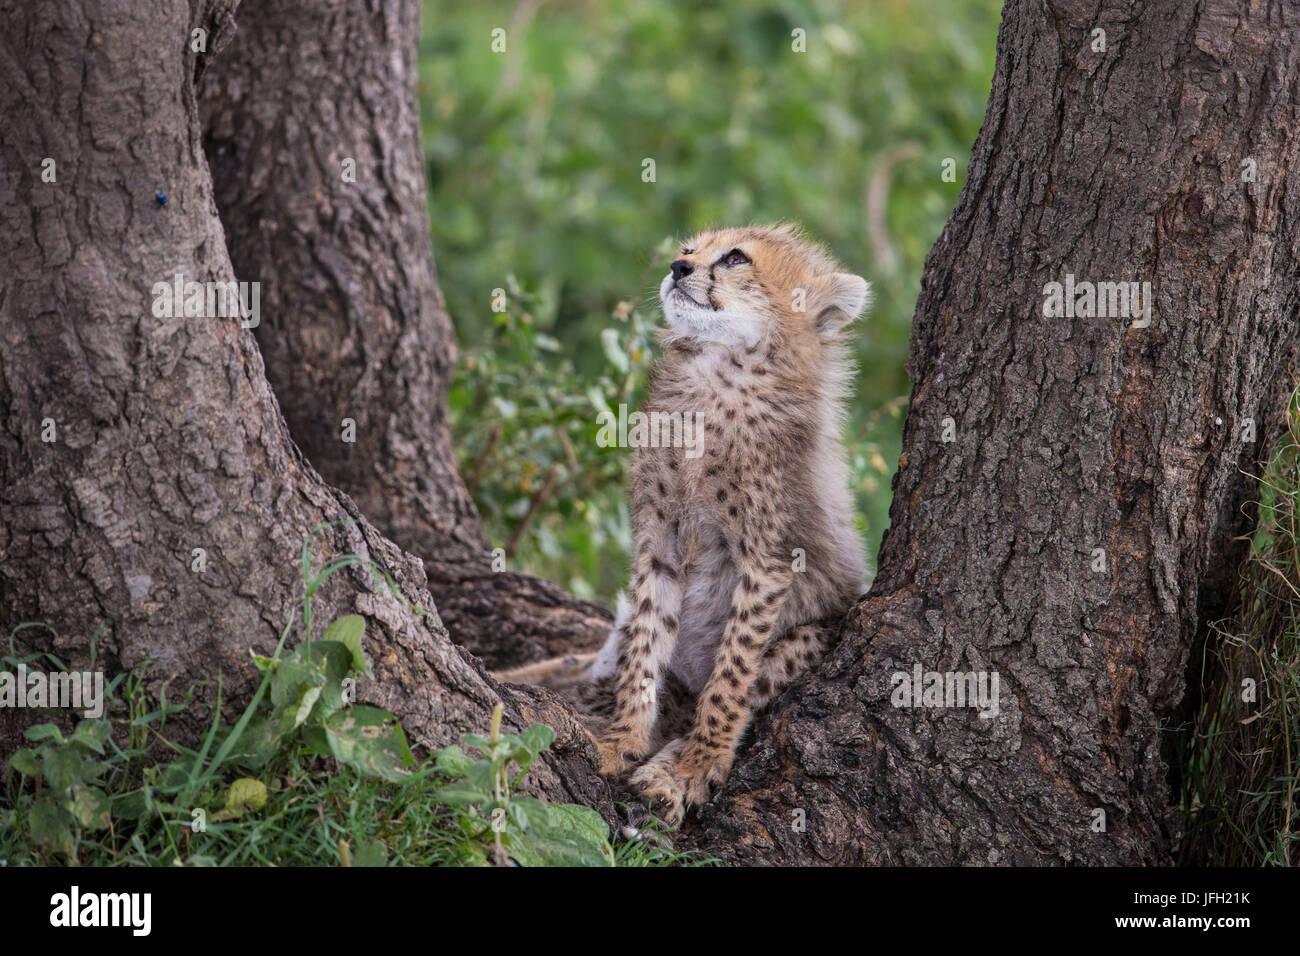 Tanzania, Serengeti national park, young cheetah Stock Photo